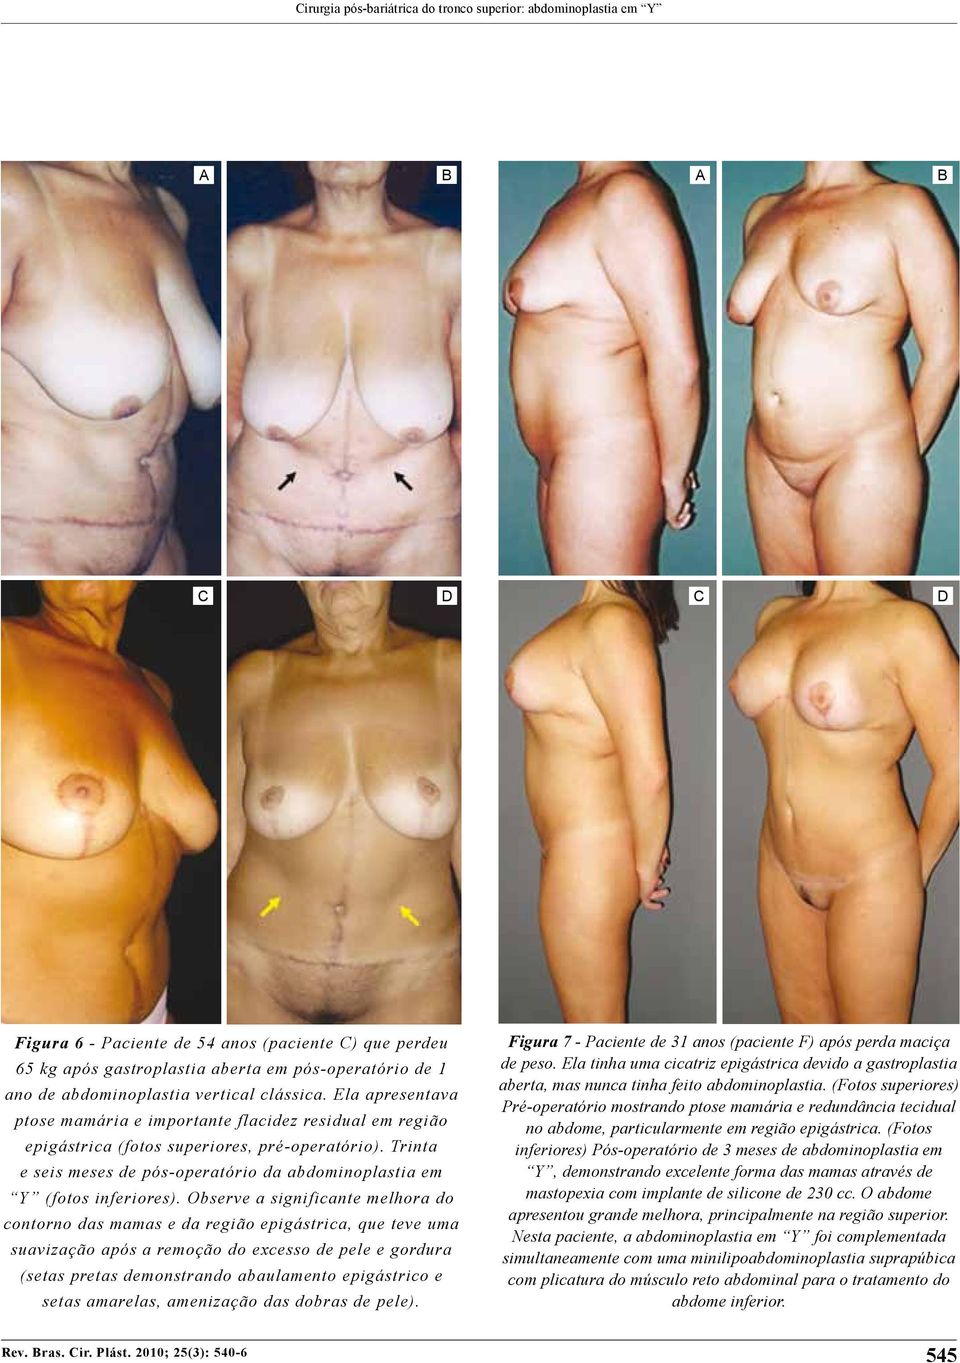 Trinta e seis meses de pós-operatório da abdominoplastia em Y (fotos inferiores).